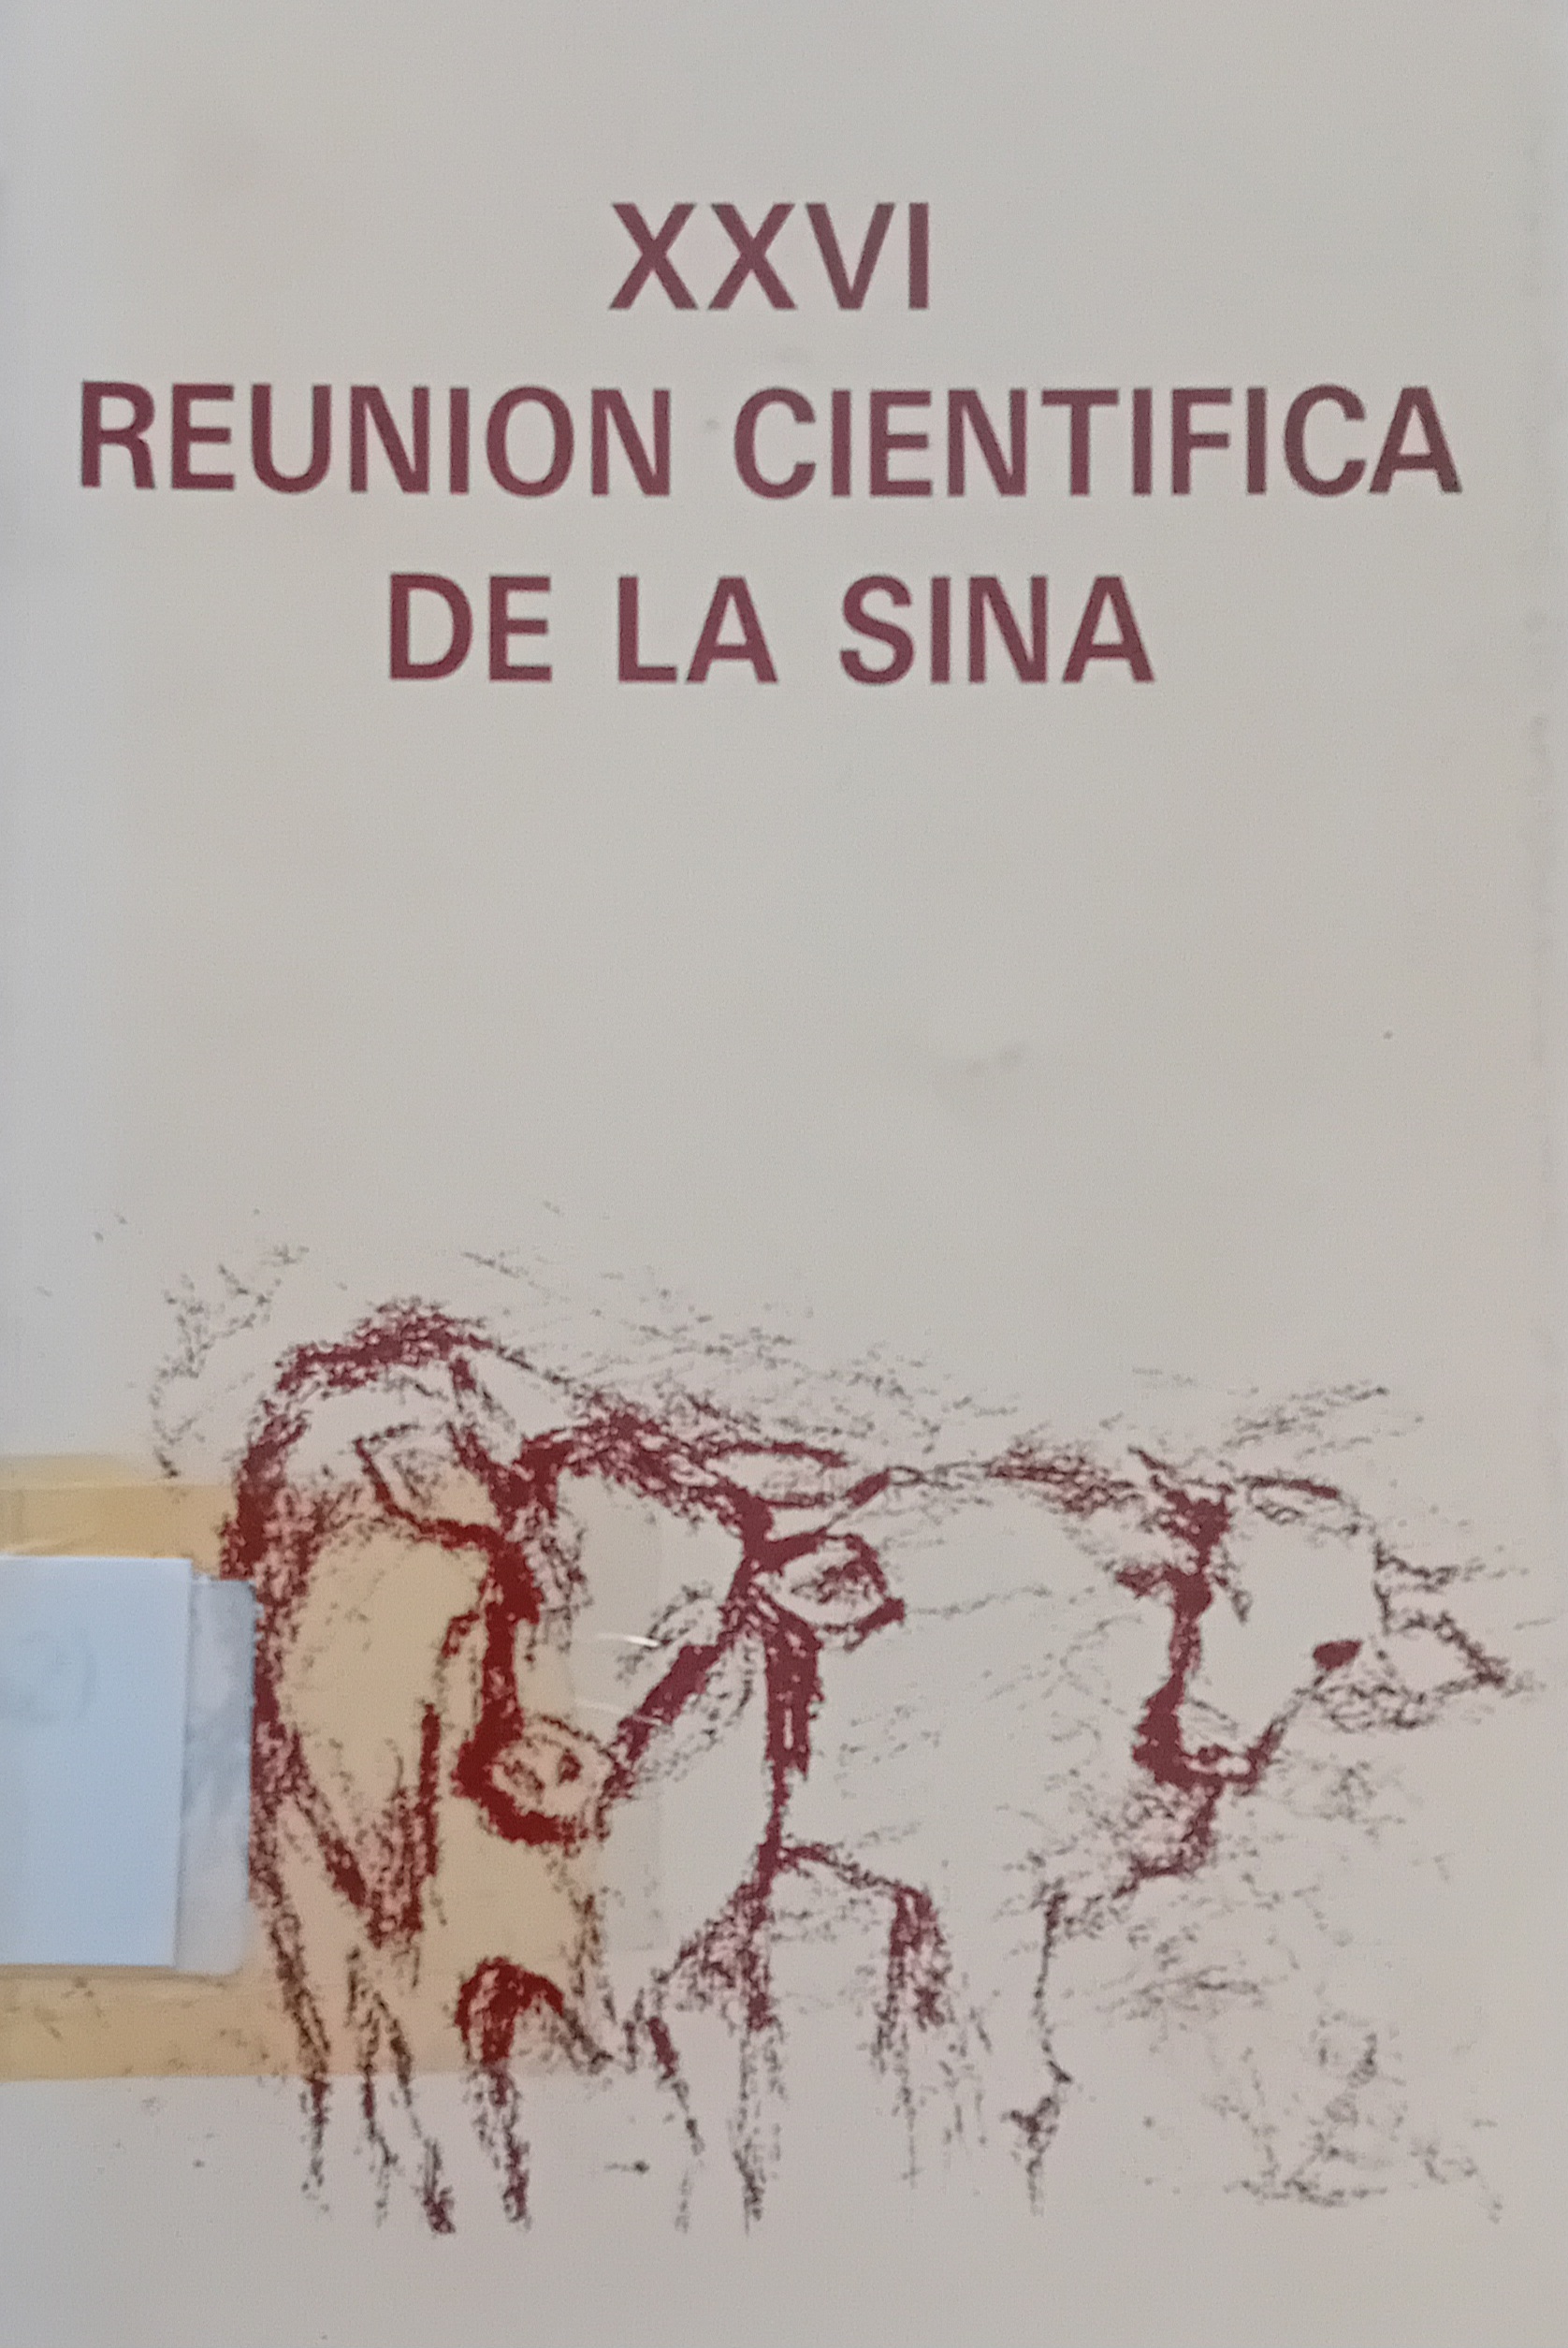 Imagen de portada del libro XXVI Reunión Científica de la Sociedad Ibérica de Nutrición Animal